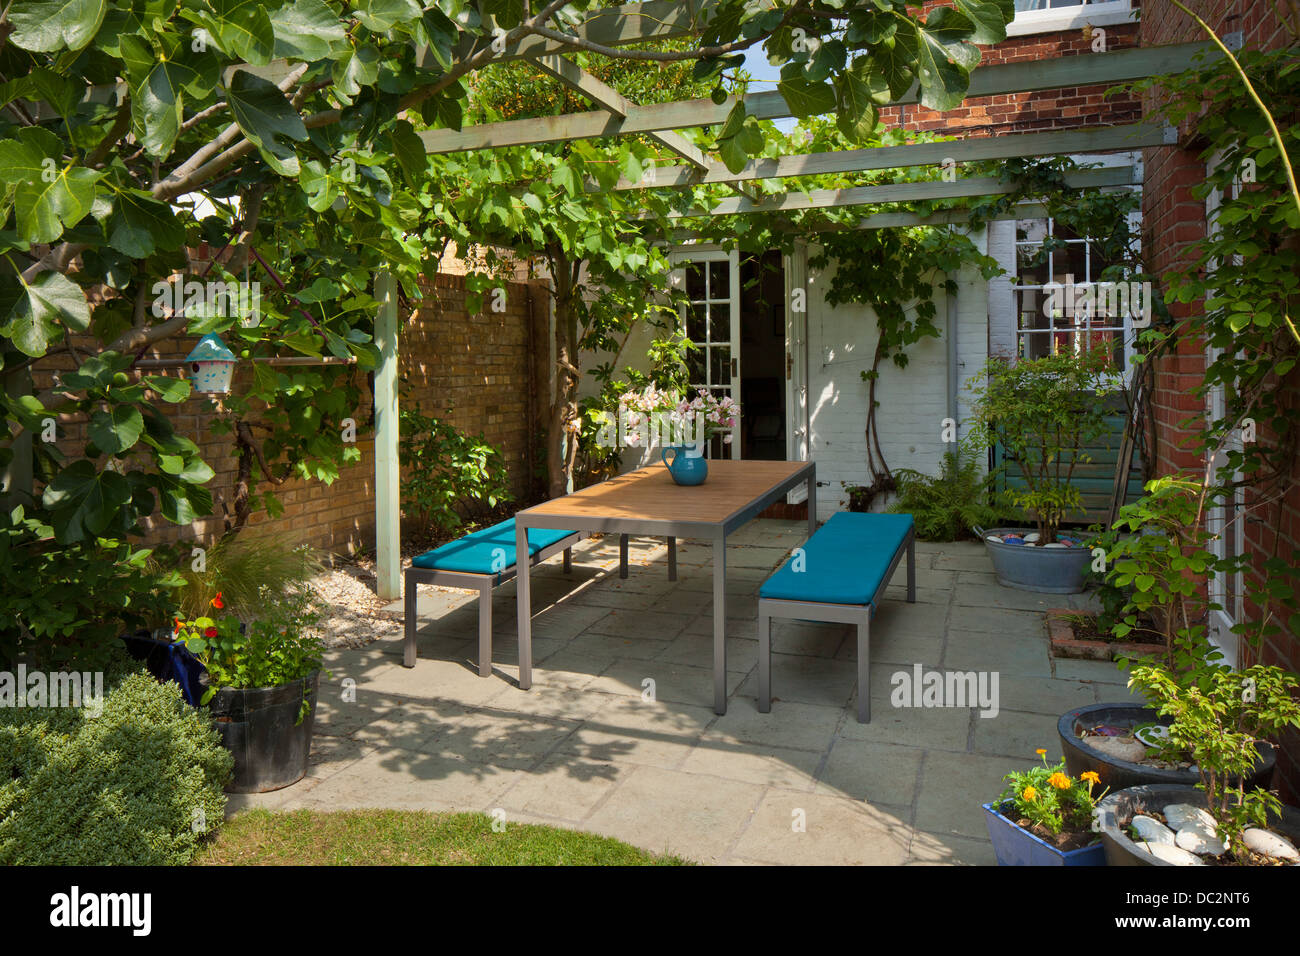 Contemporary garden furniture under wooden pergola and shady patio in English garden, England Stock Photo